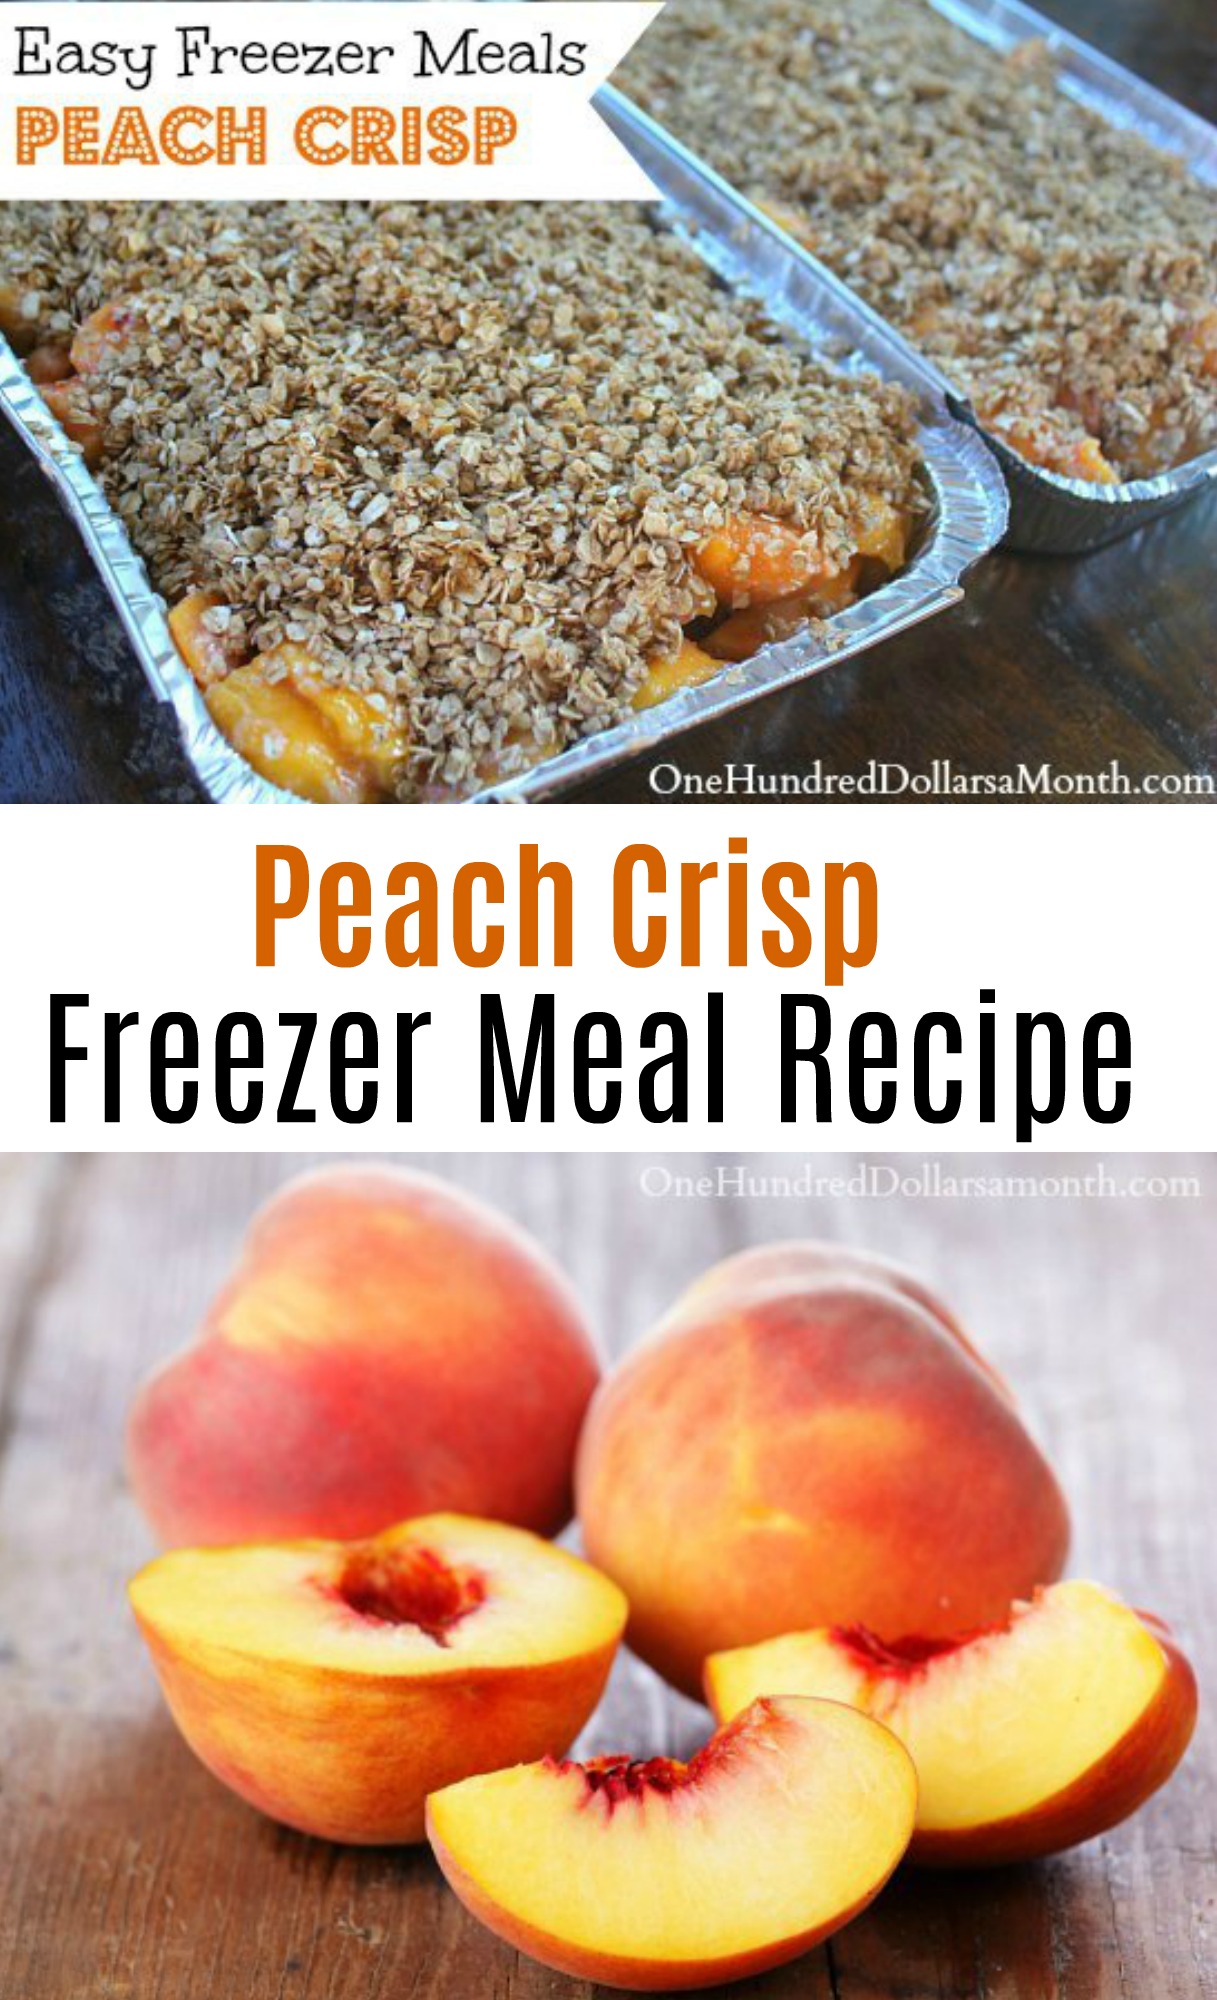 Easy Freezer Meals – Peach Crisp Recipe